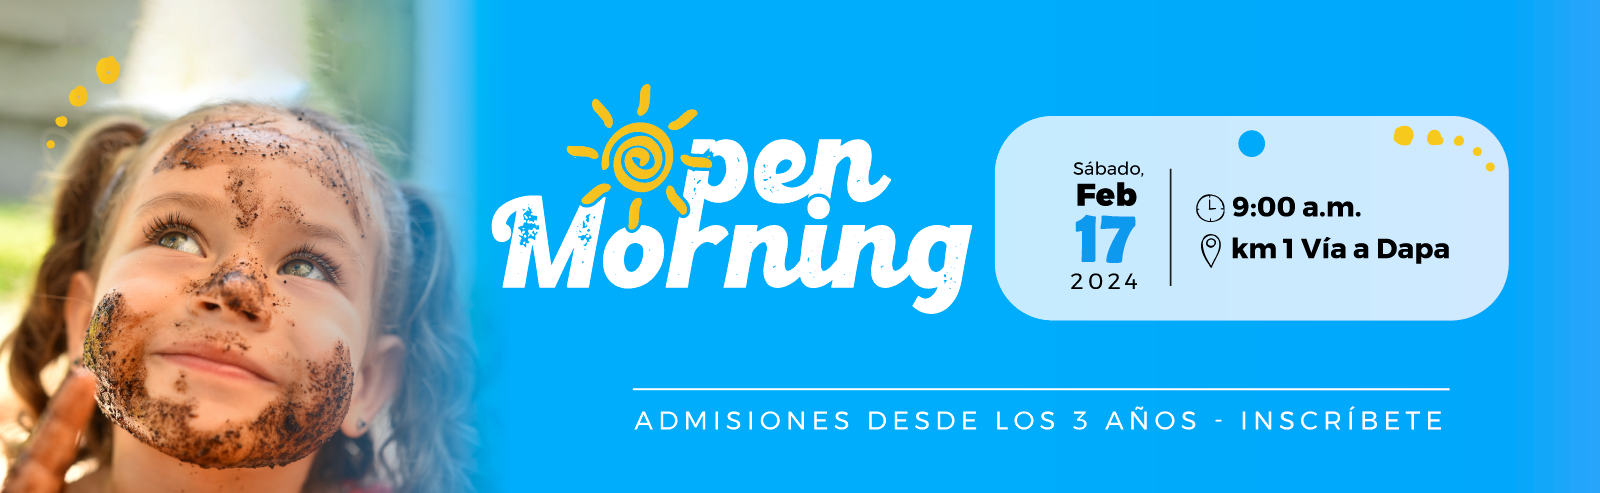 Open-Morning-banner